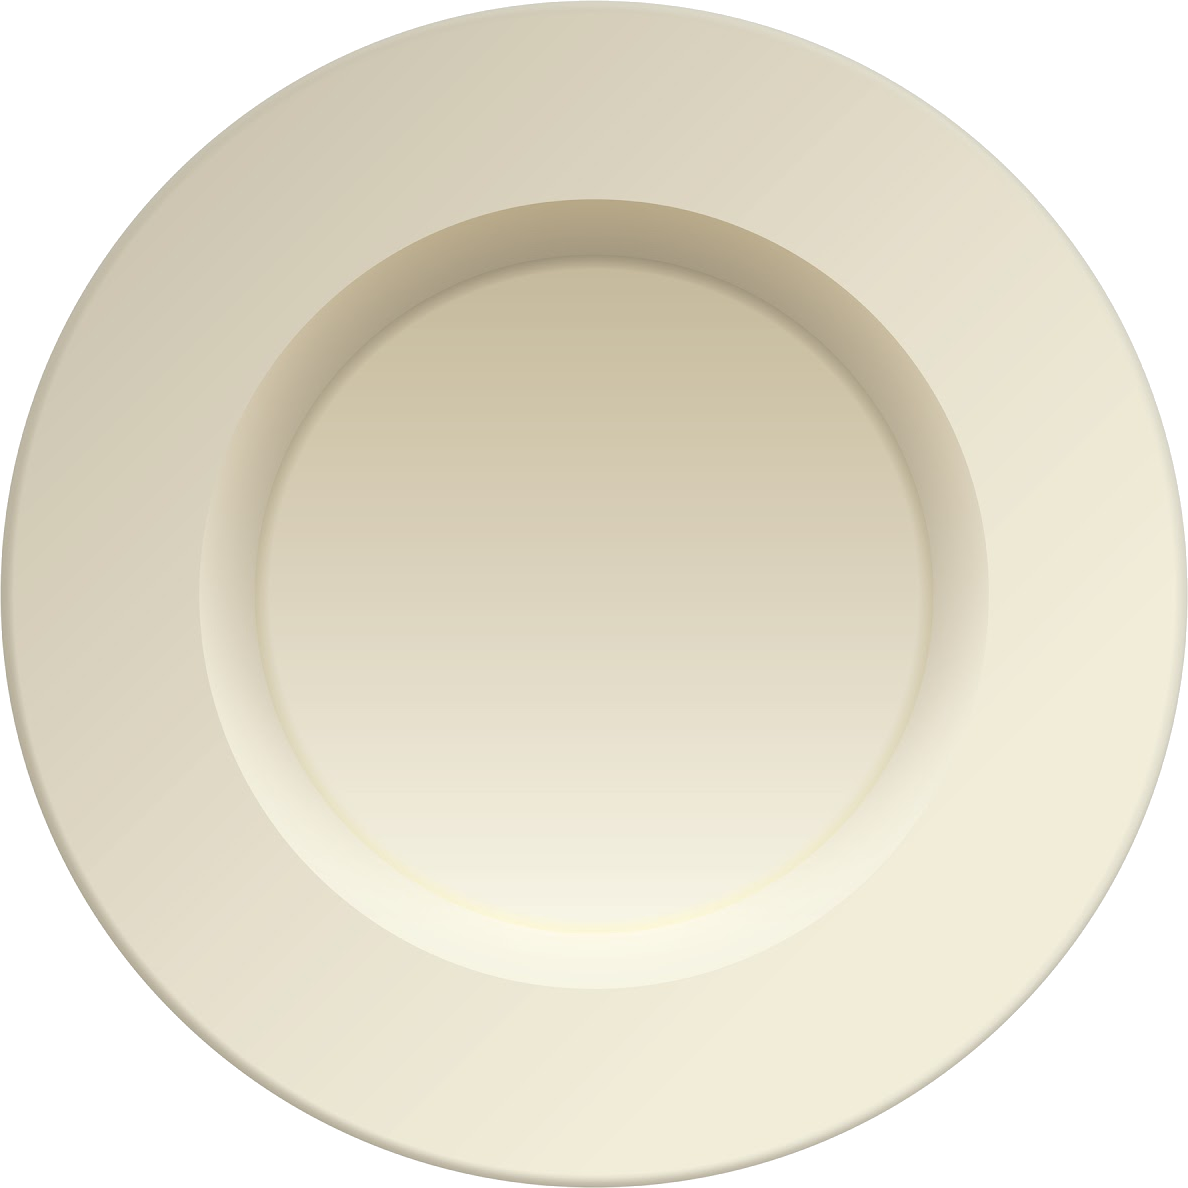 Plate chinaware